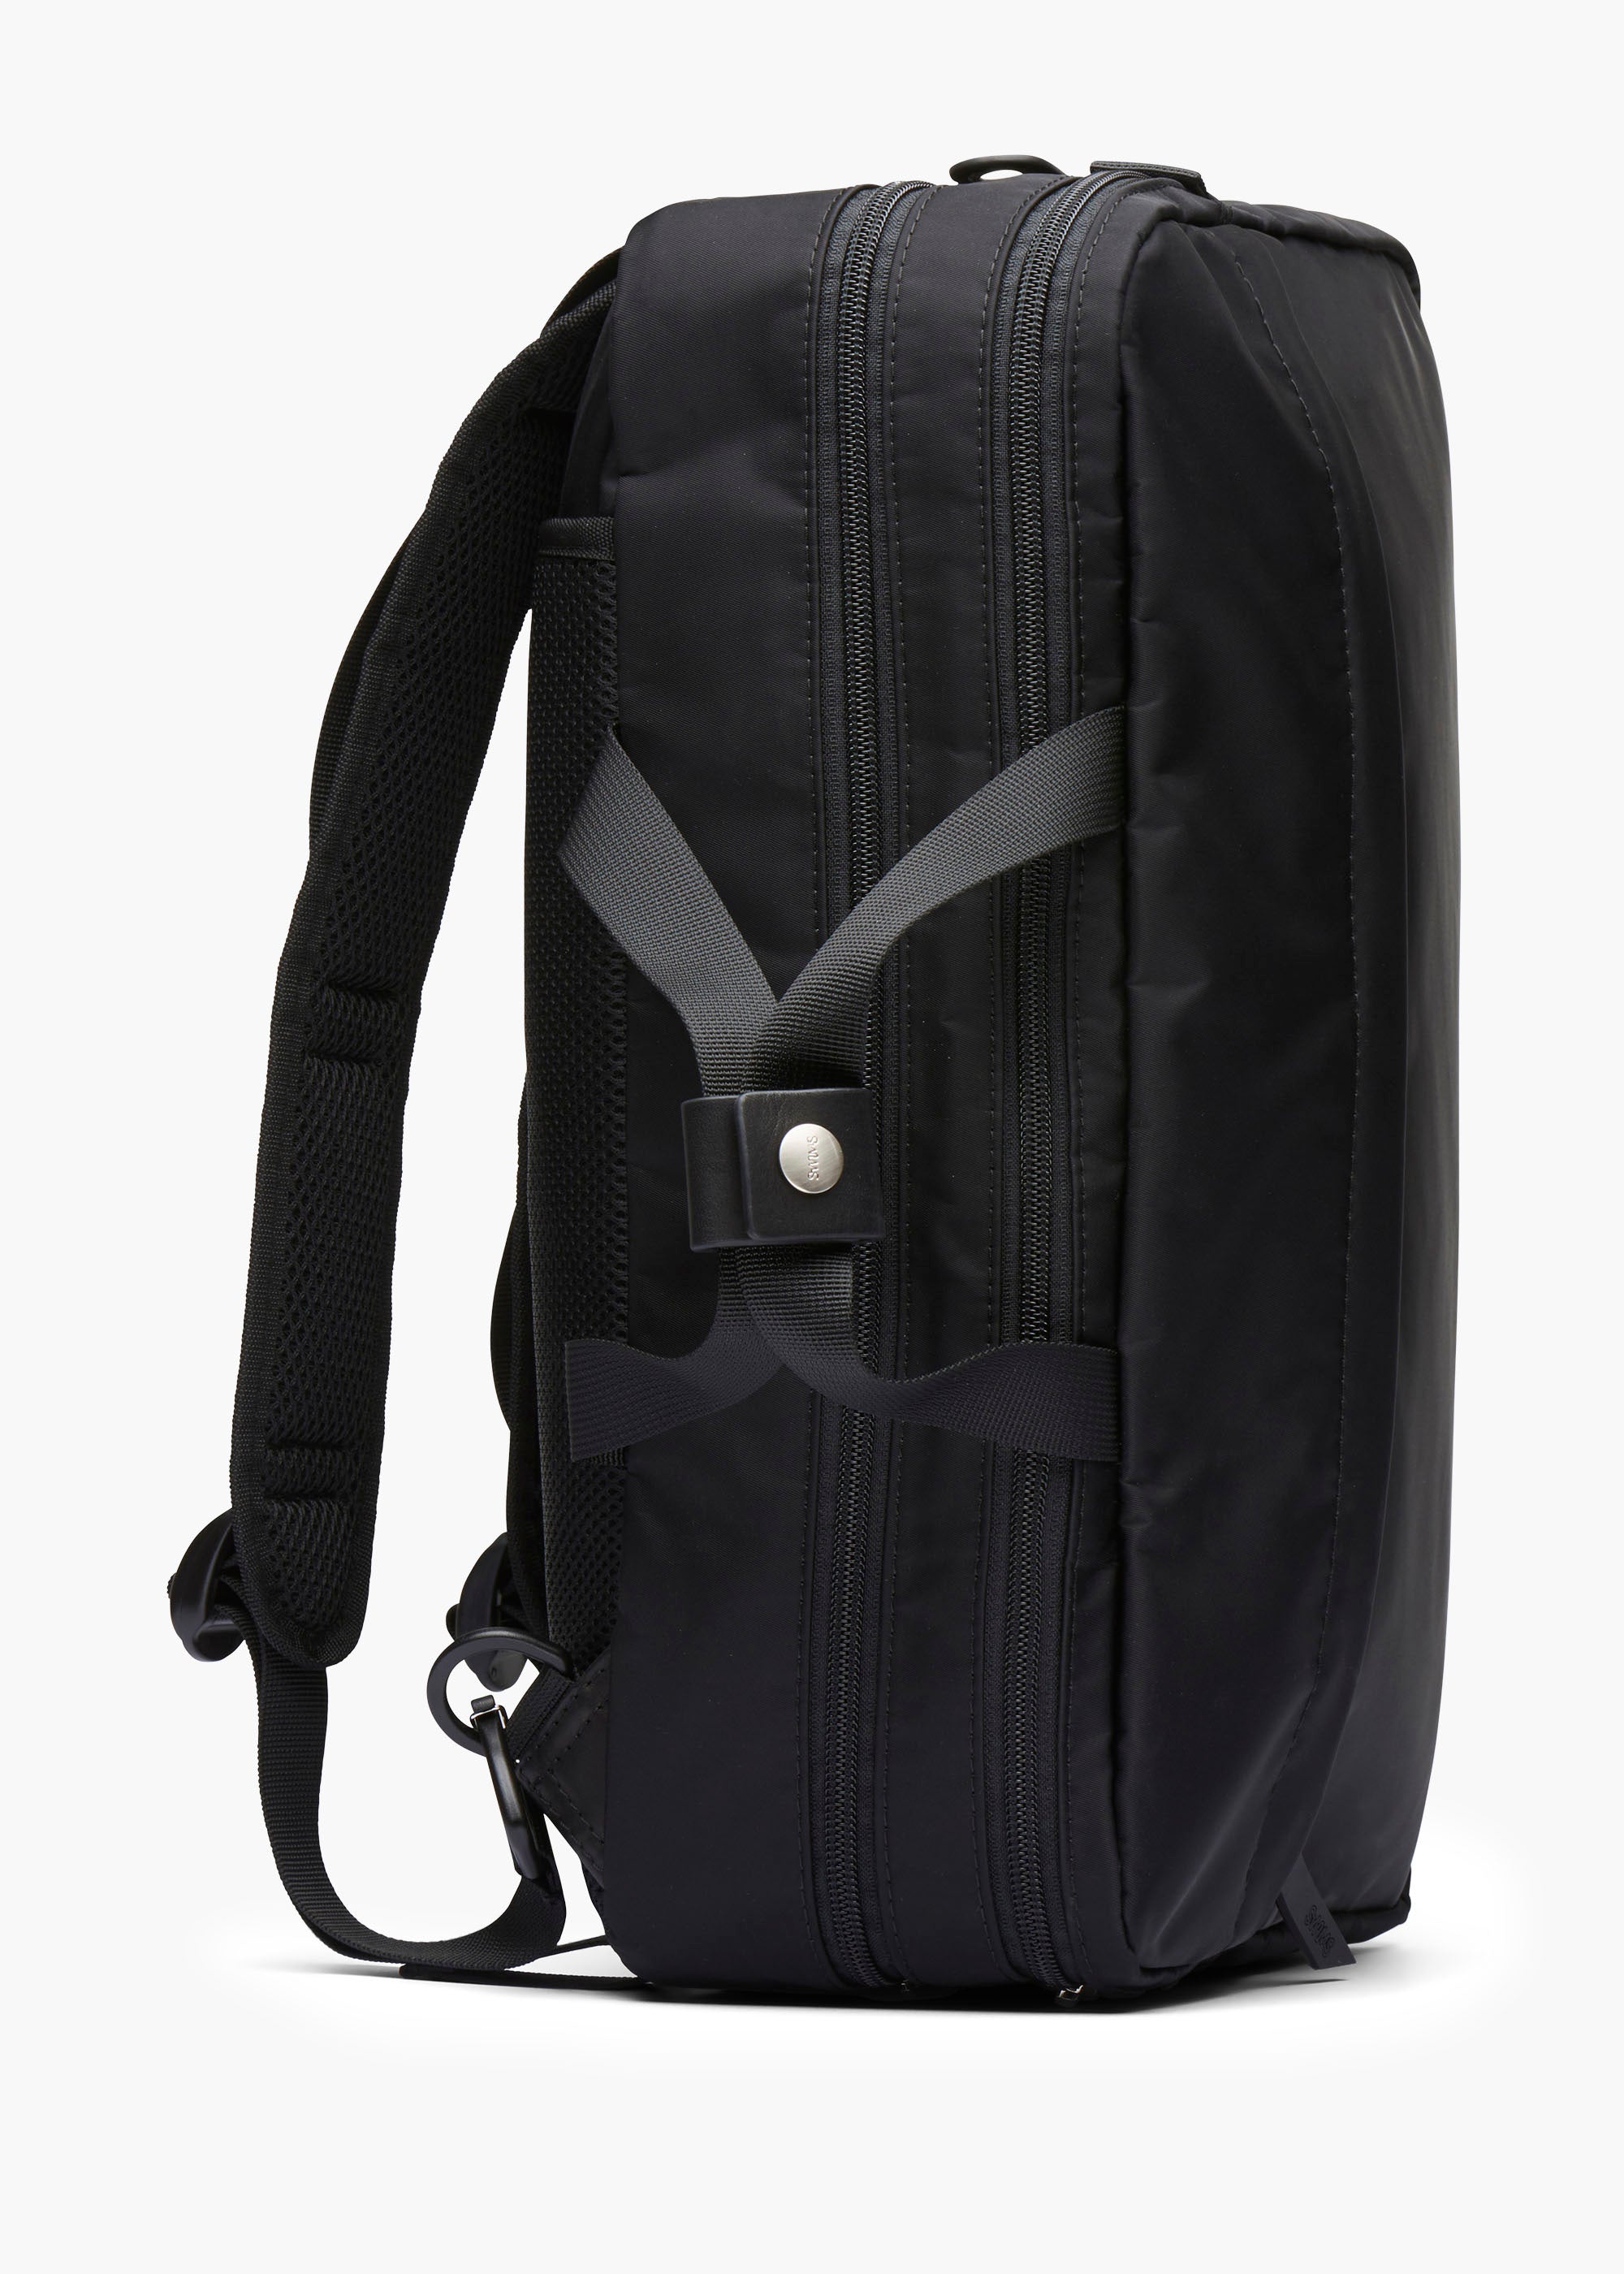 Hybrid bag - background::white,variant::Black